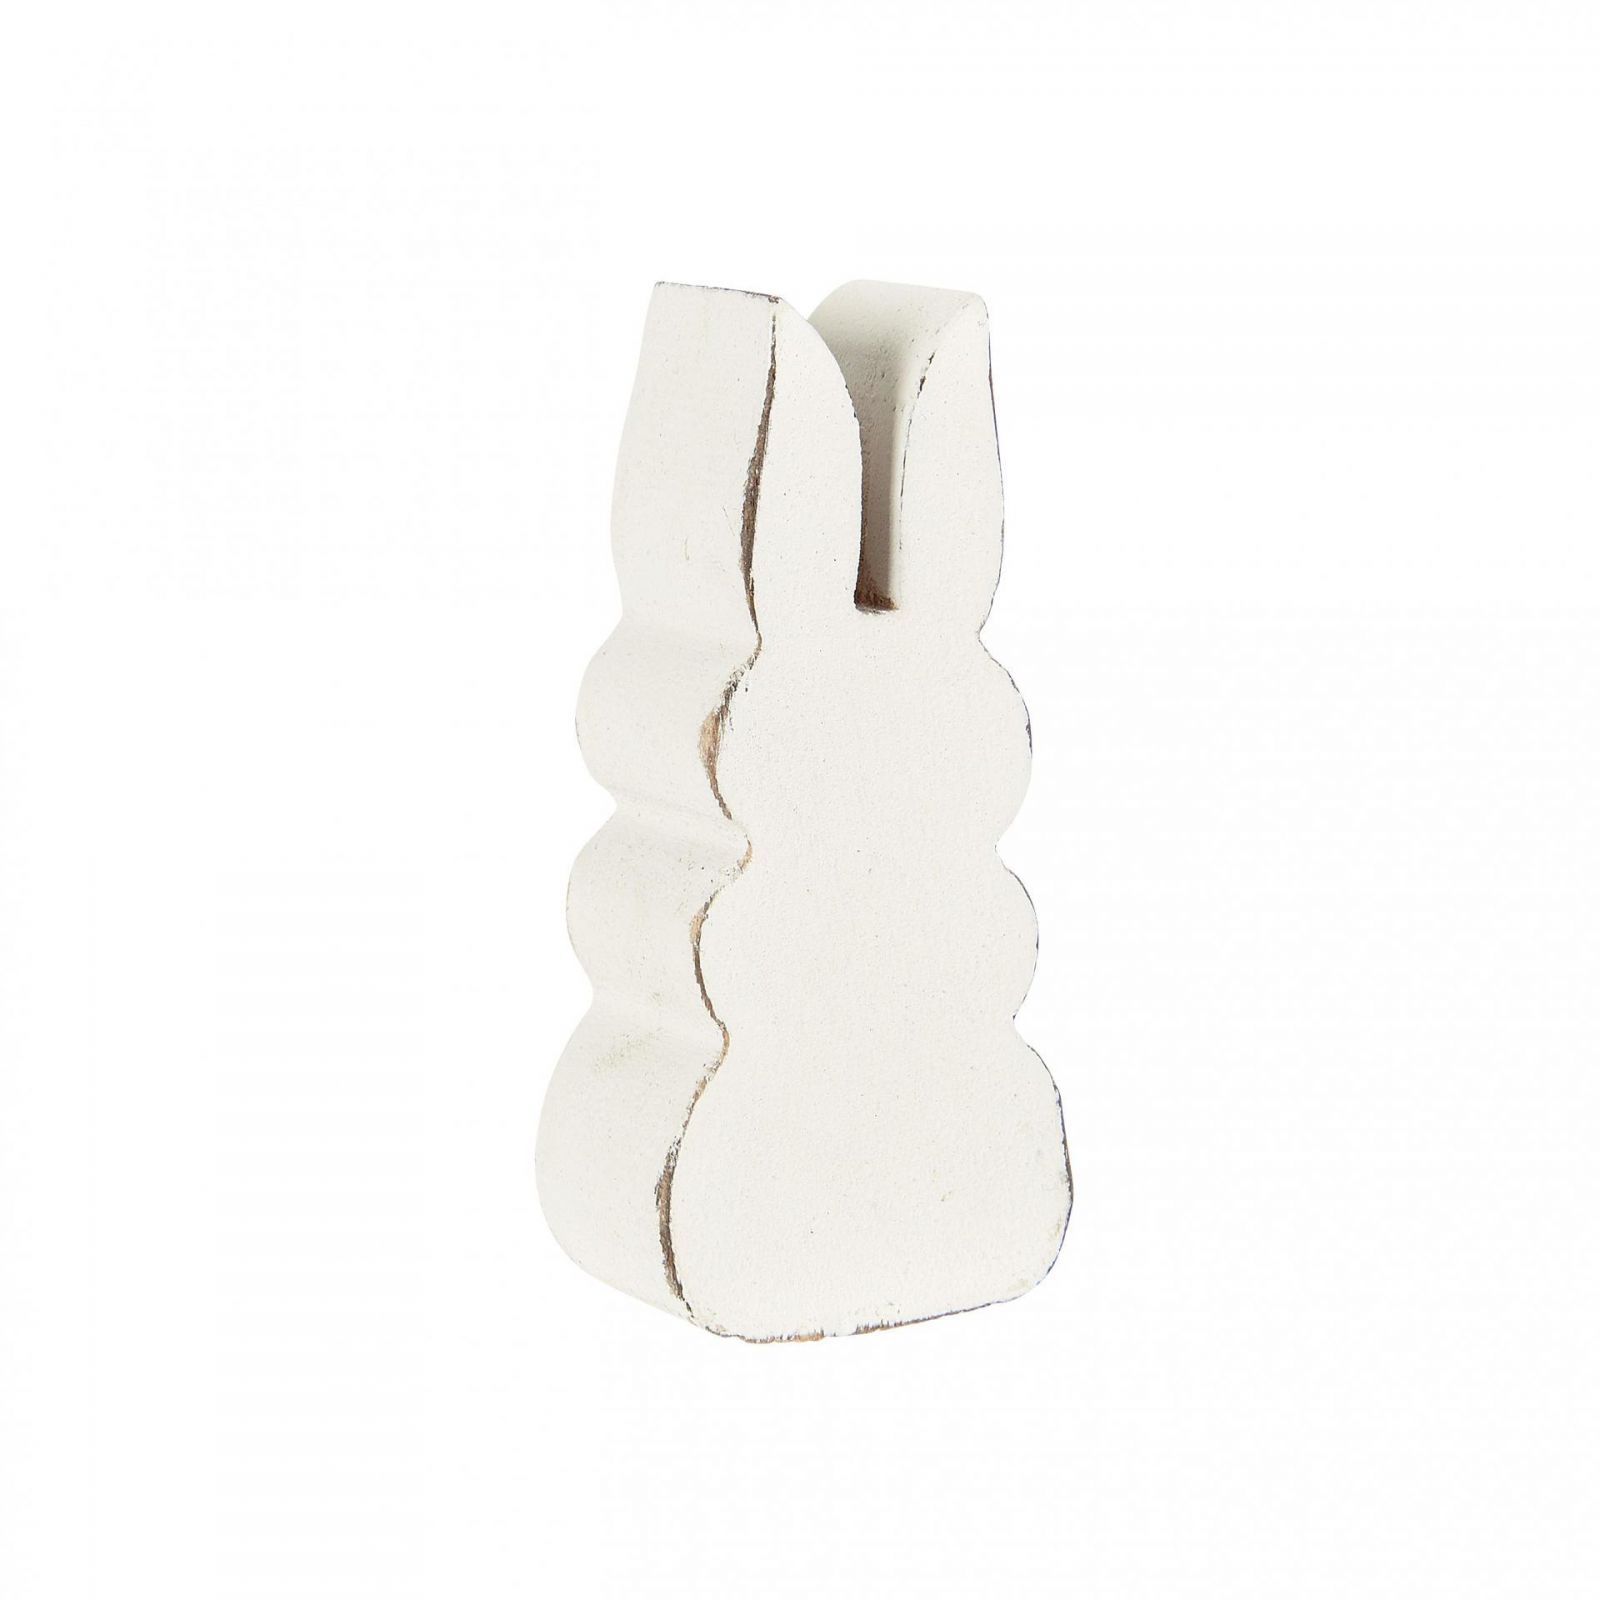 IB Laursen Dřevěná figurka Rabbit White